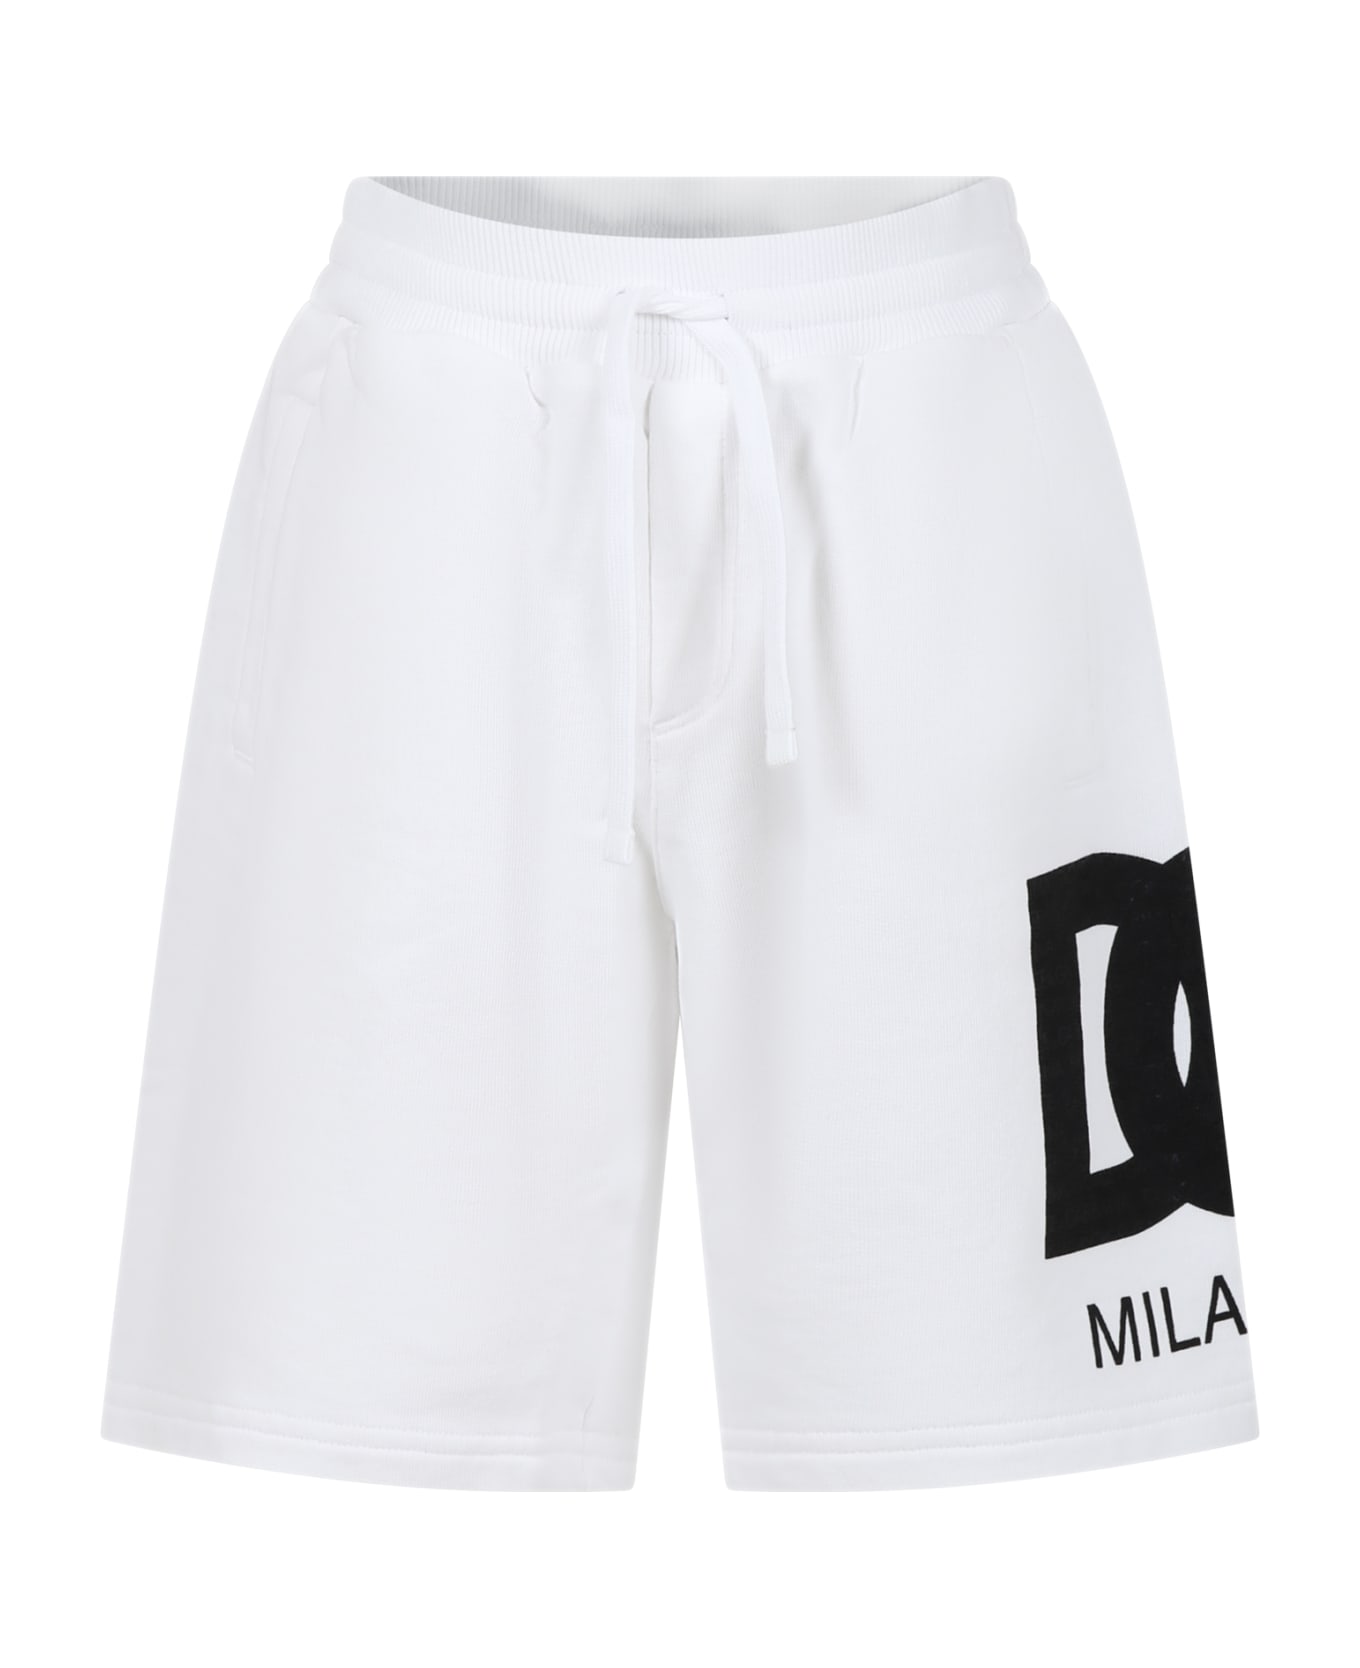 Dolce & Gabbana White Shorts For Boy With Iconic Monogram - Bianco Ottico ボトムス